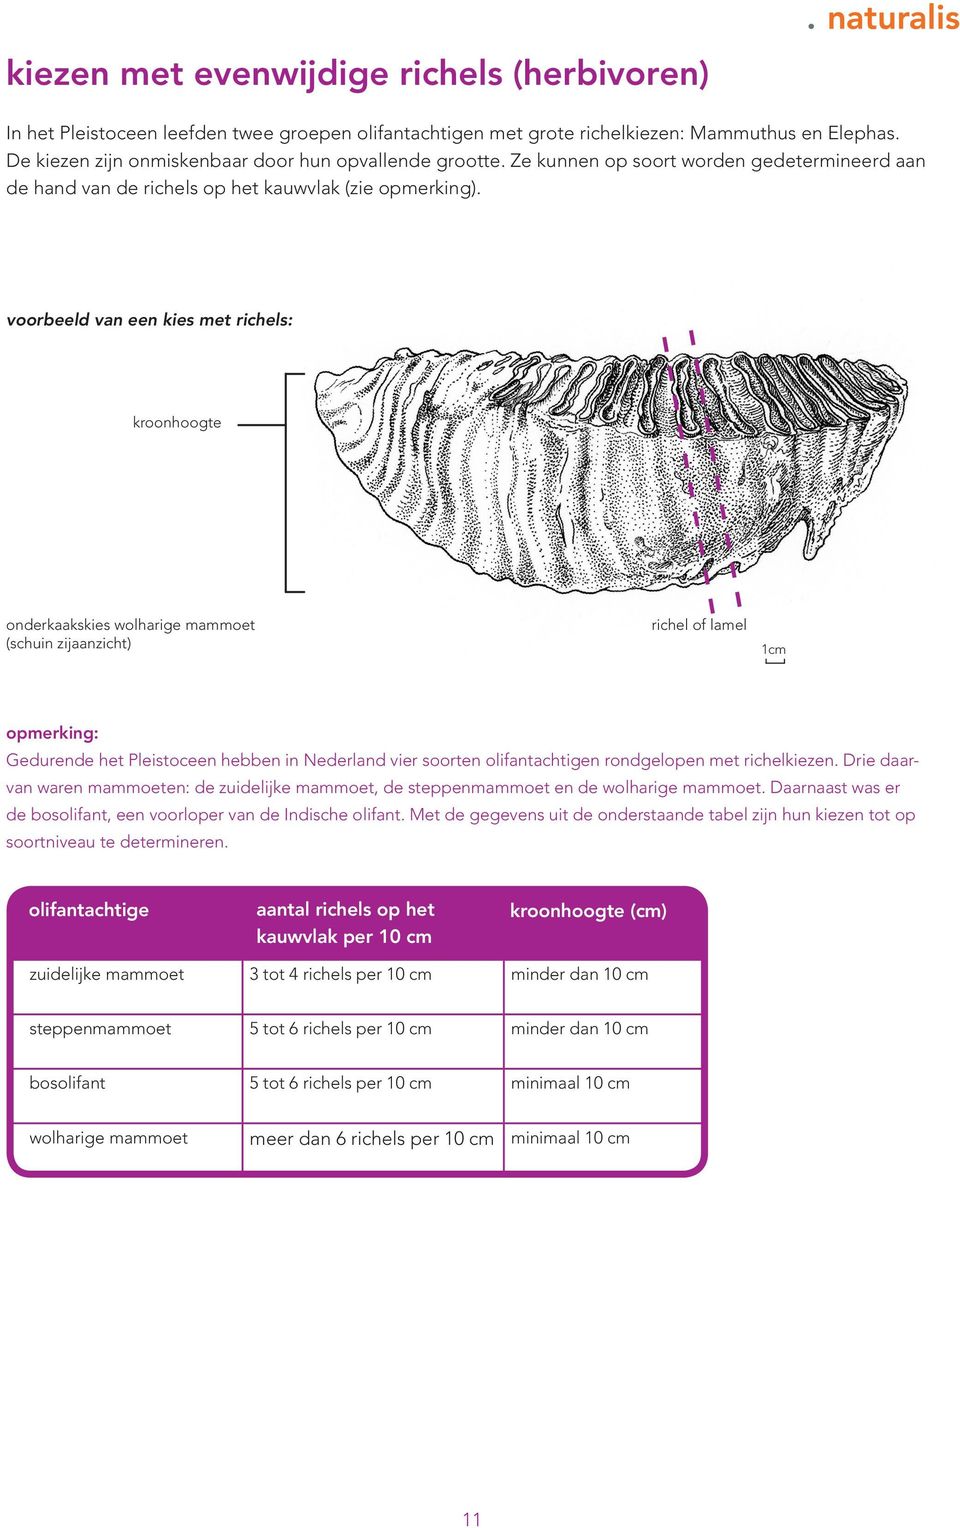 voorbeeld van een kies met richels: kroonhoogte onderkaakskies wolharige mammoet (schuin zijaanzicht) richel of lamel Gedurende het Pleistoceen hebben in Nederland vier soorten olifantachtigen